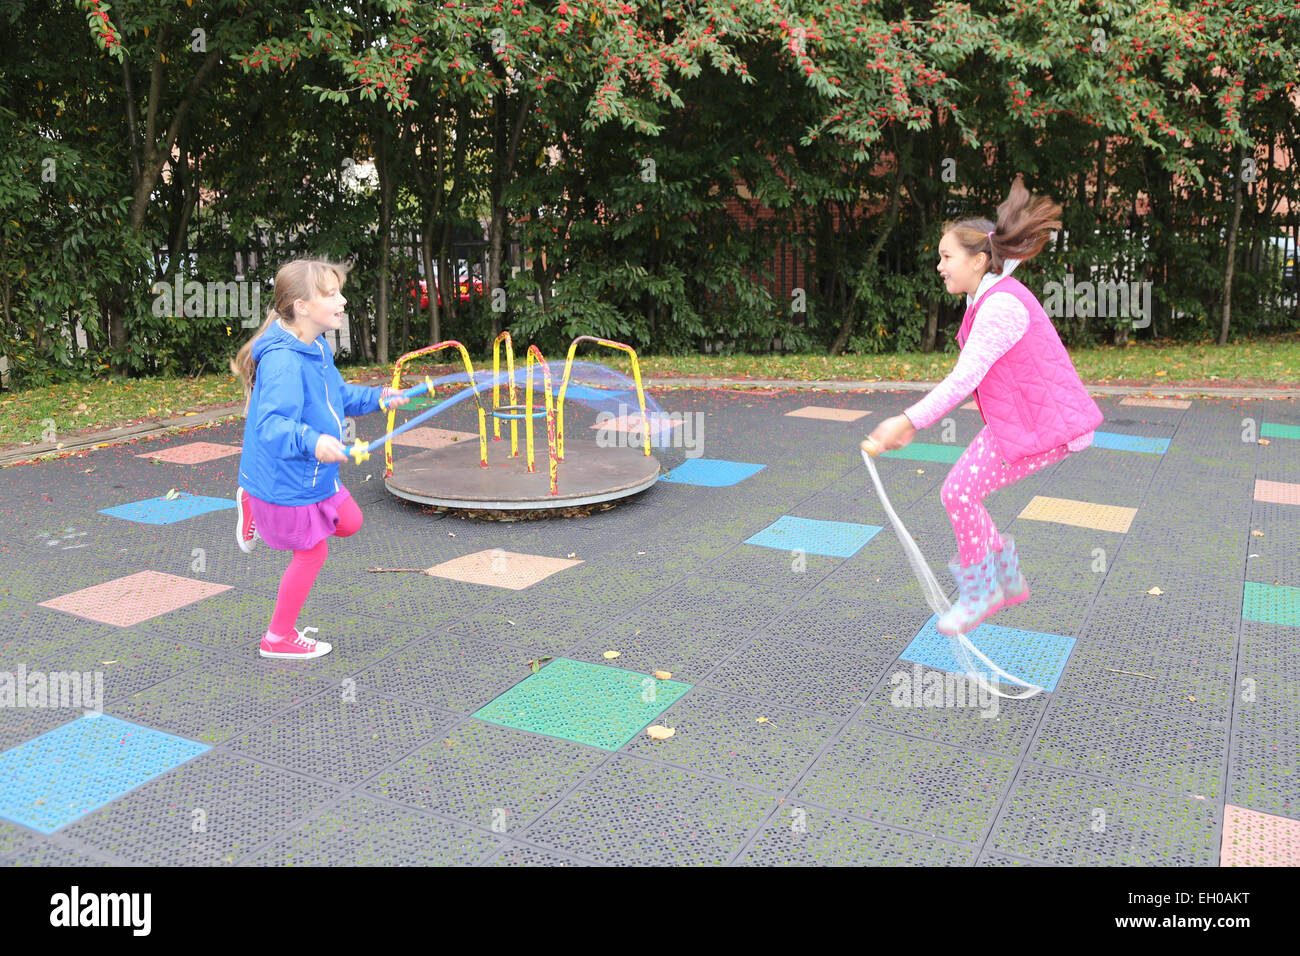 Mädchen spielen im Stadtpark - Modell veröffentlicht Stockfoto